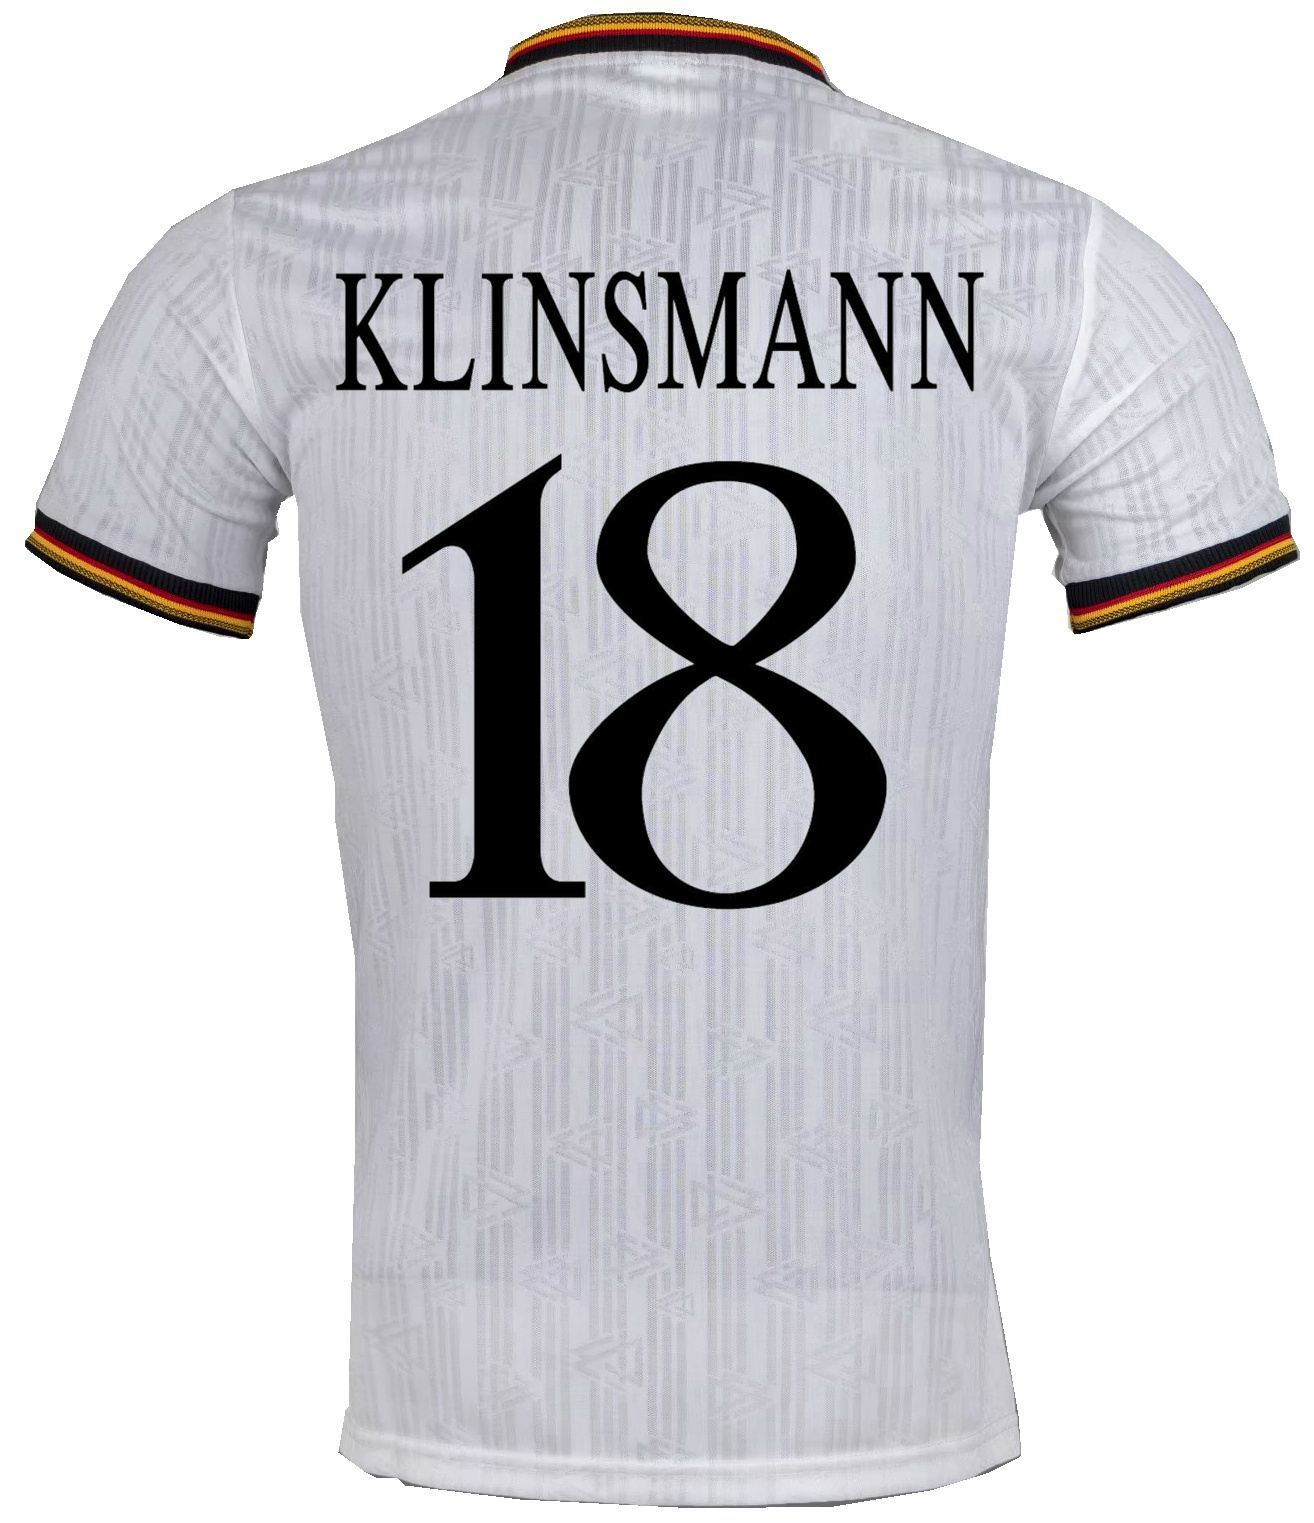 Klinsmann 18